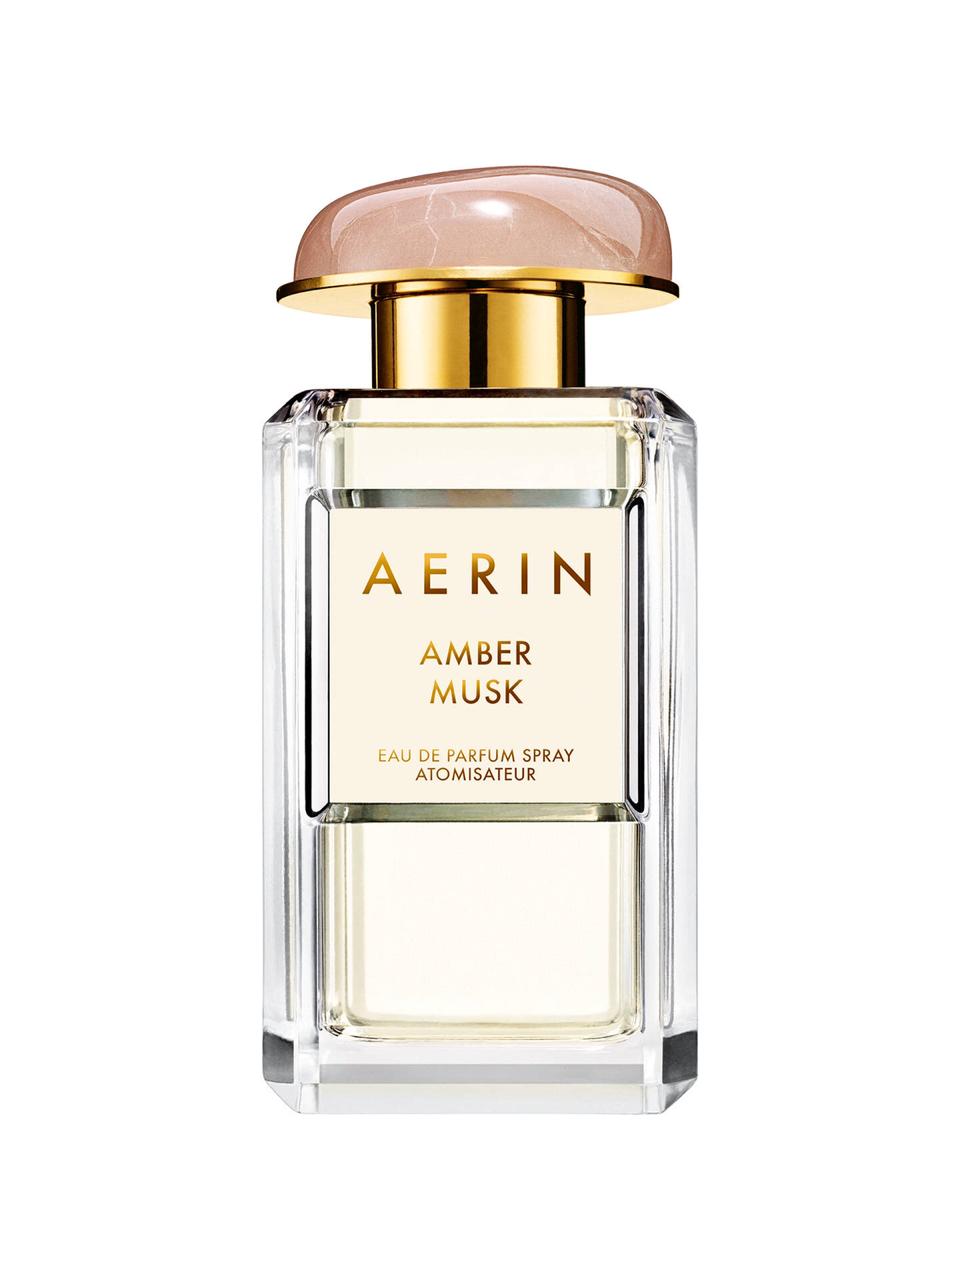 ‏Aerin Amber Musk eau de parfum